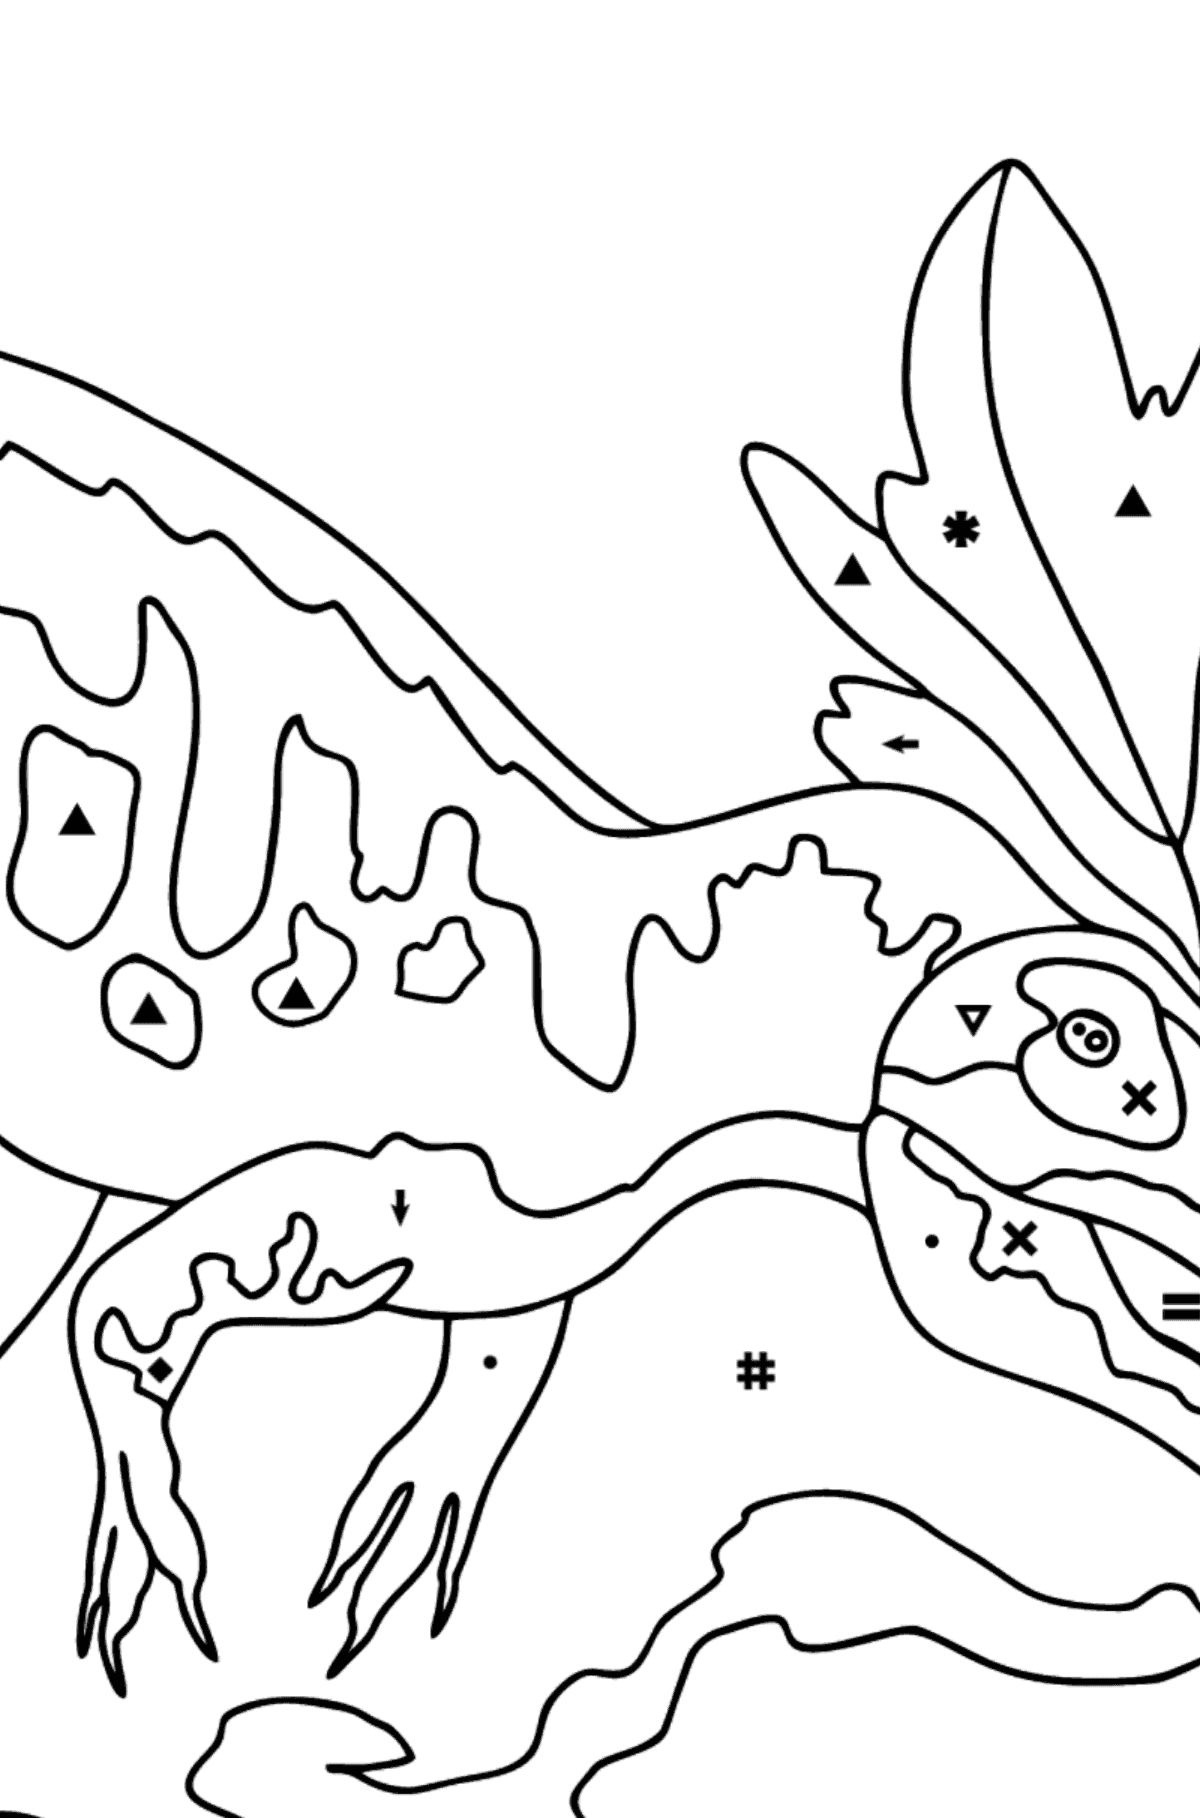 Tegning til fargelegging allosaurus (vanskelig) - Fargelegge etter symboler for barn